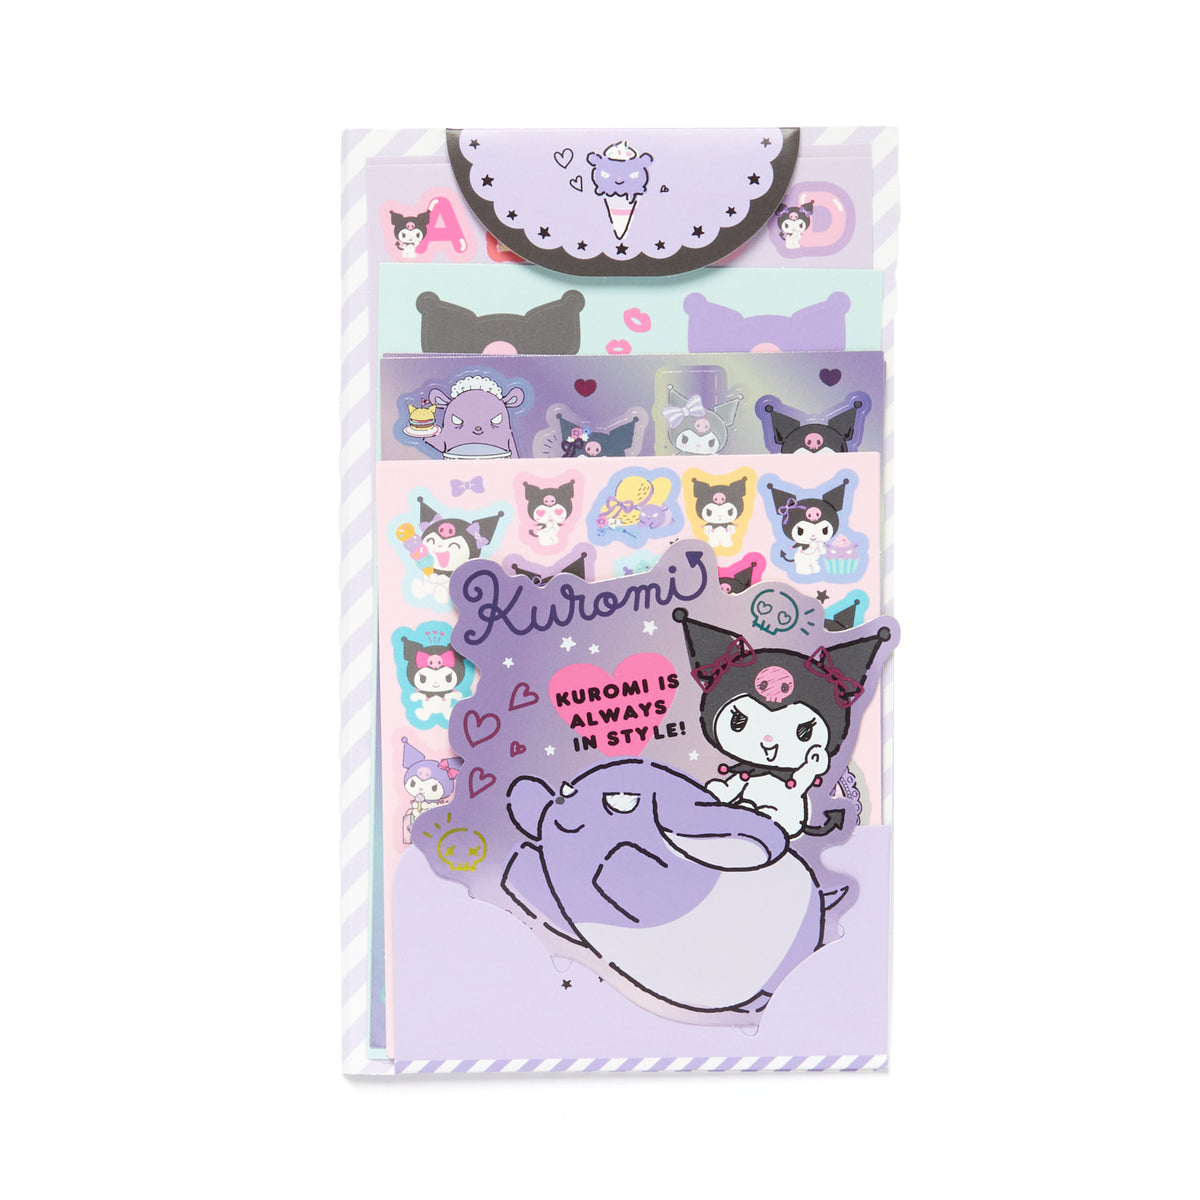 Sanrio Sticker Sheet - Kuromi 4964694407018